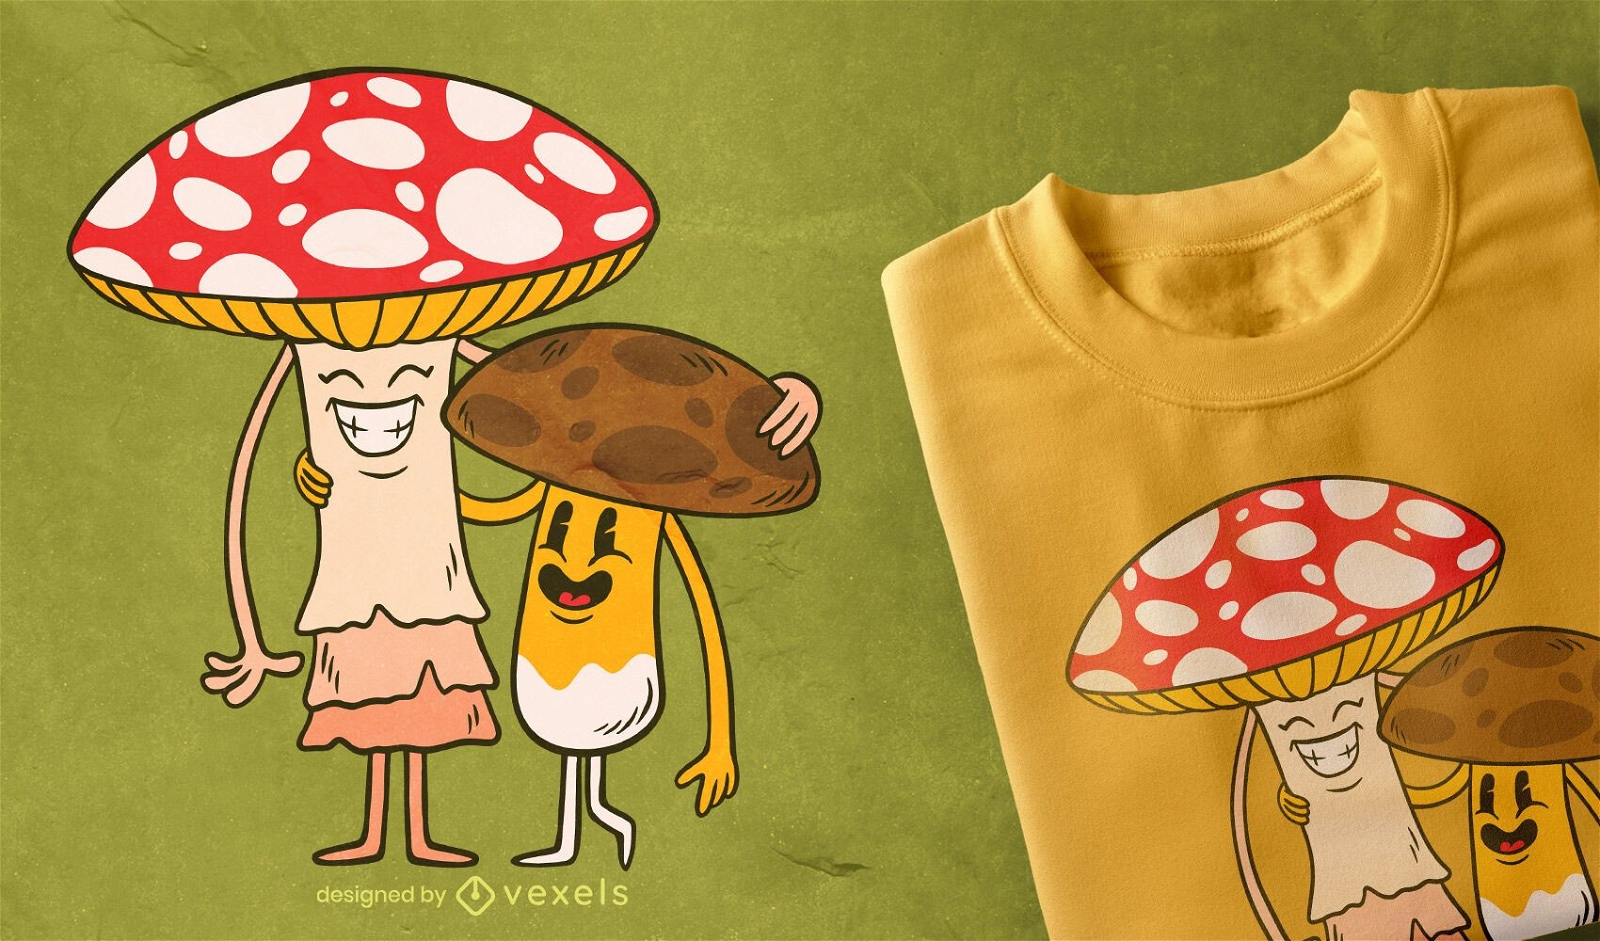 Dise?o de camiseta de amigos de hongos.